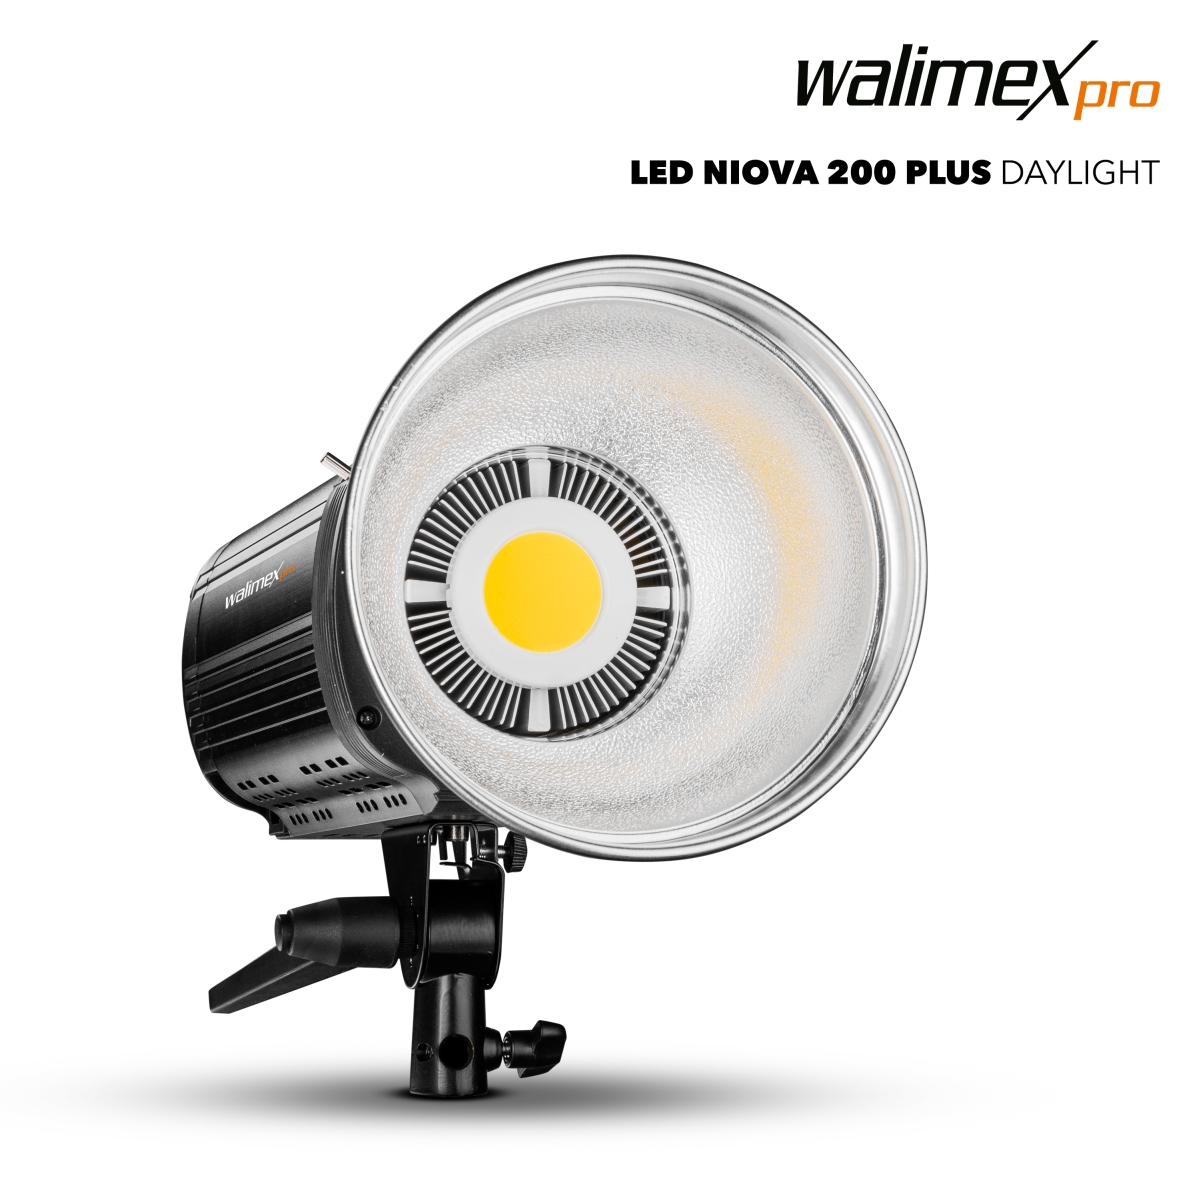 Walimex pro LED Niova 200 Plus Daylight 200W